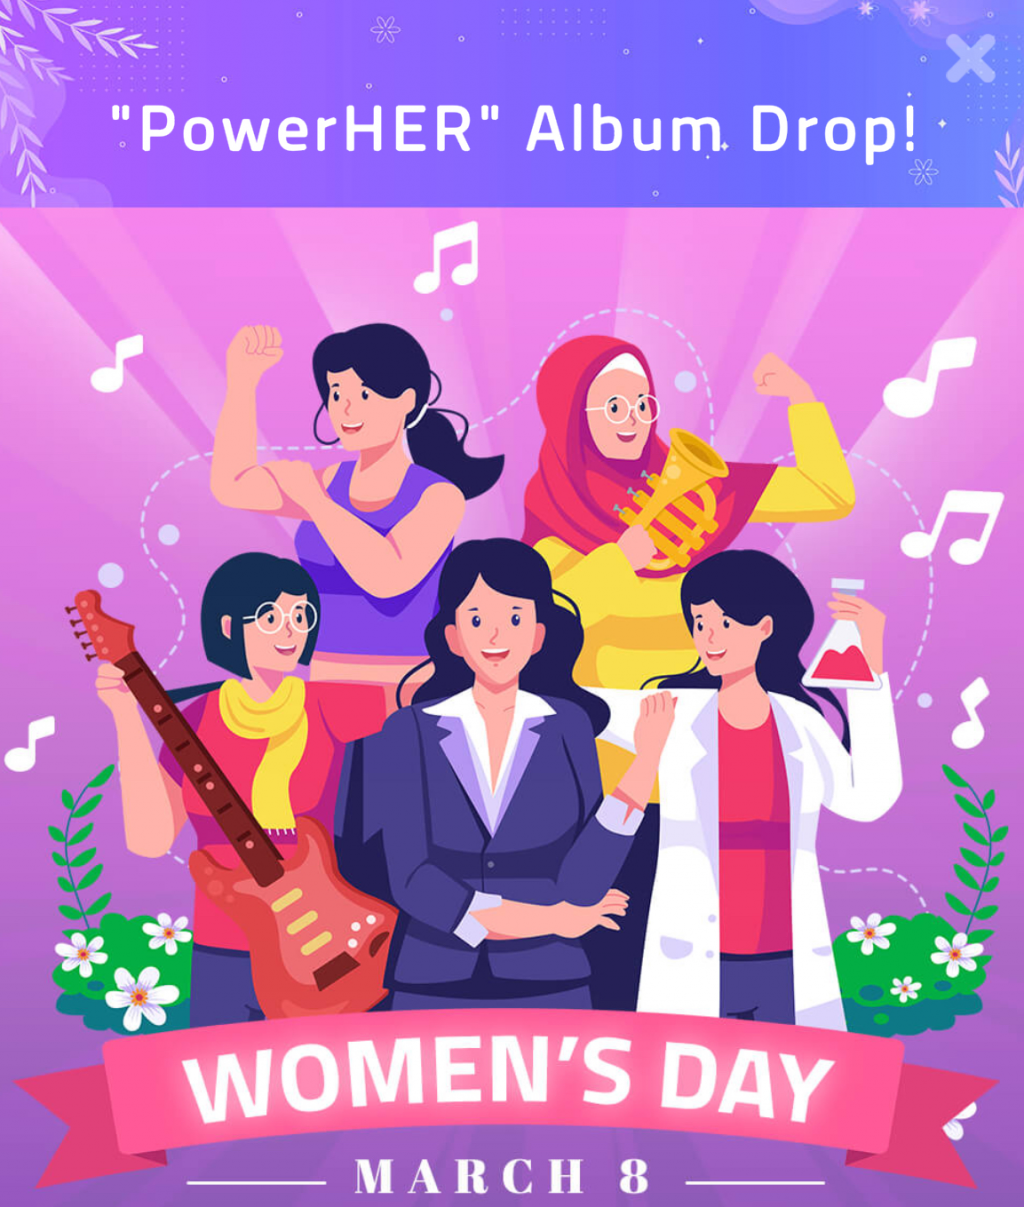 Chiến dịch PowerHER của Amanotes hướng tới việc lan tỏa thông điệp về sức mạnh và tiềm năng của phụ nữ đến với hàng tỷ người chơi trên toàn thế giới thông qua các trò chơi như Magic Tiles 3, Tiles Hop